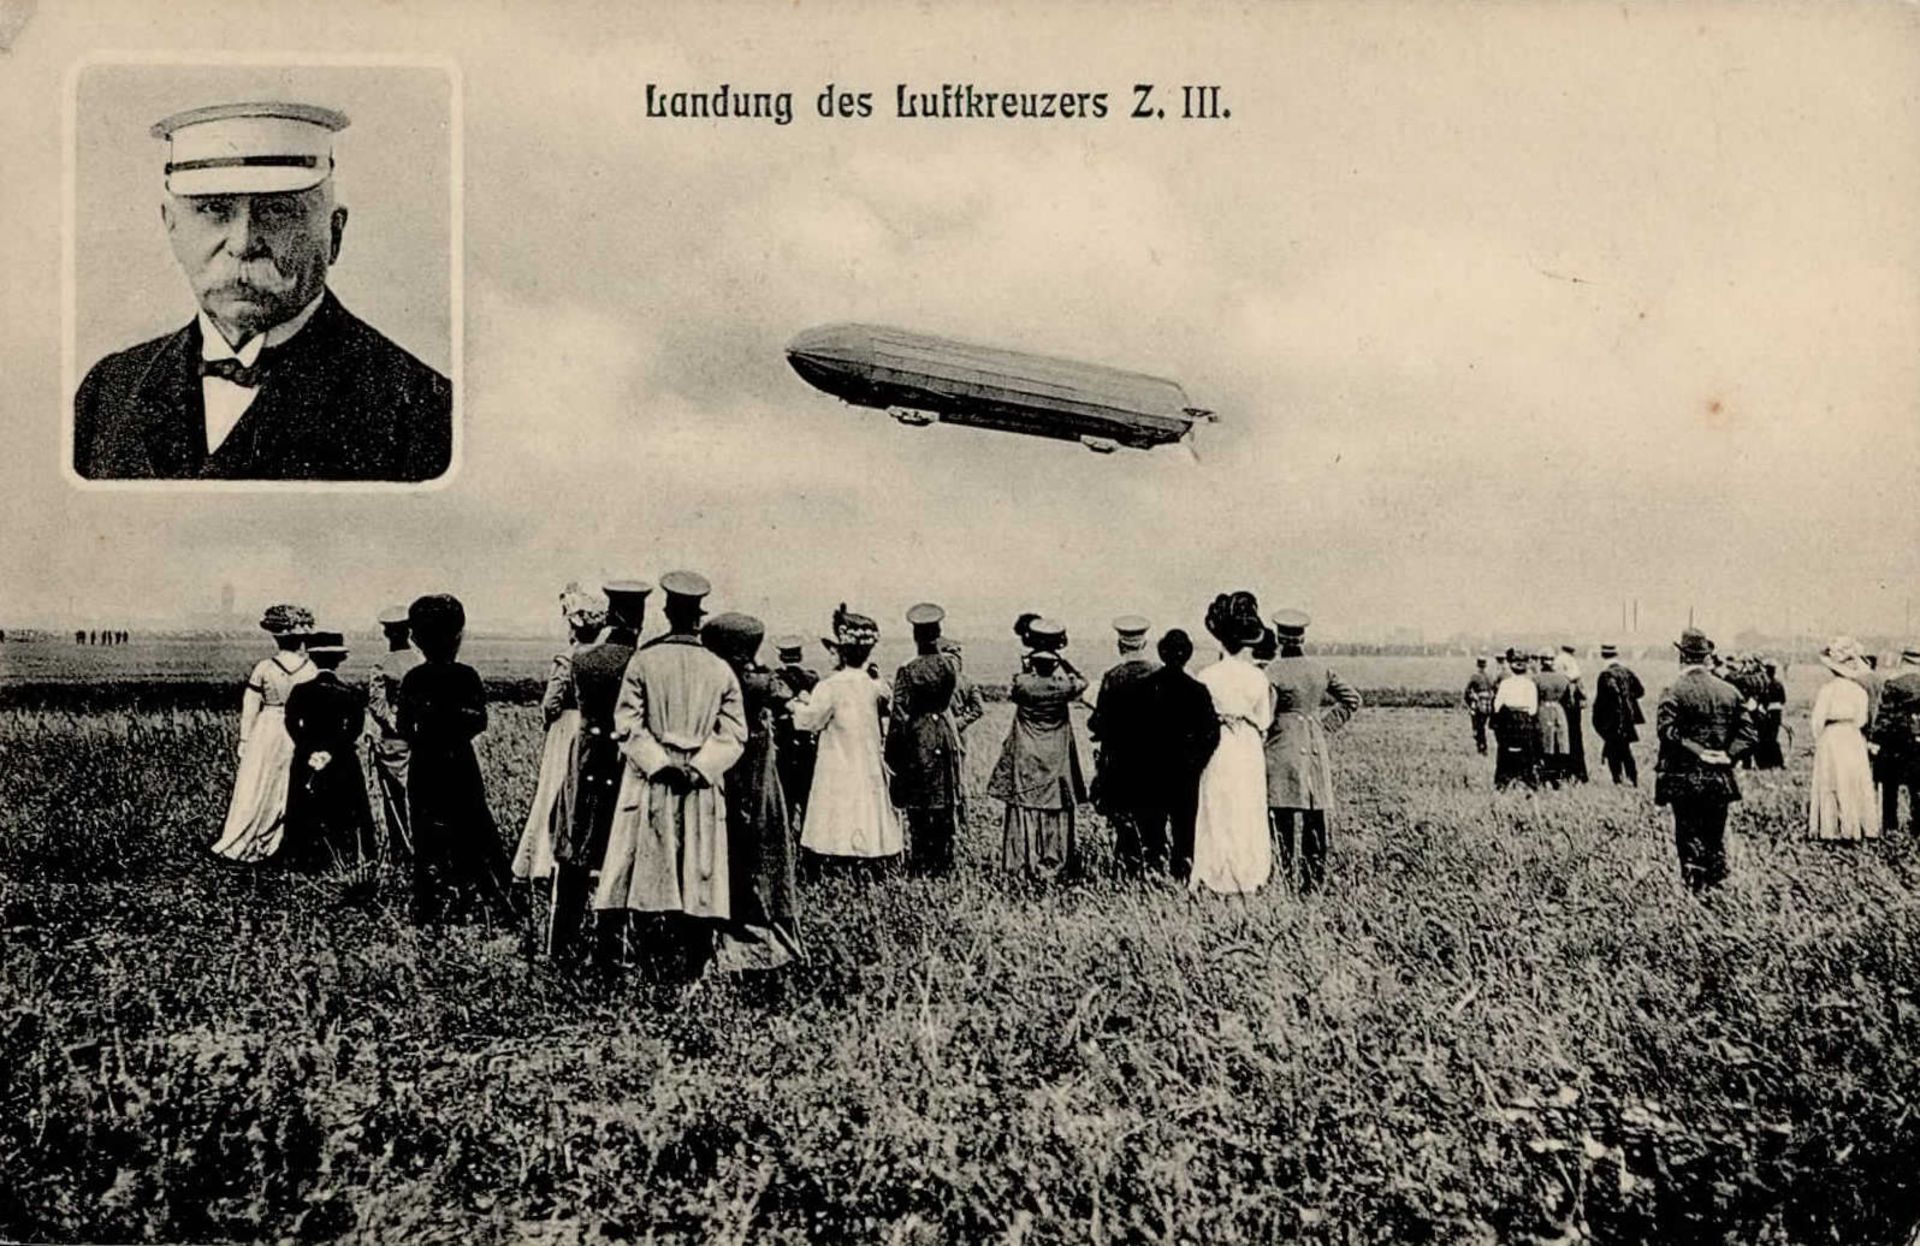 Zeppelin Luftkreuzer Z III (LZ 6) I-II